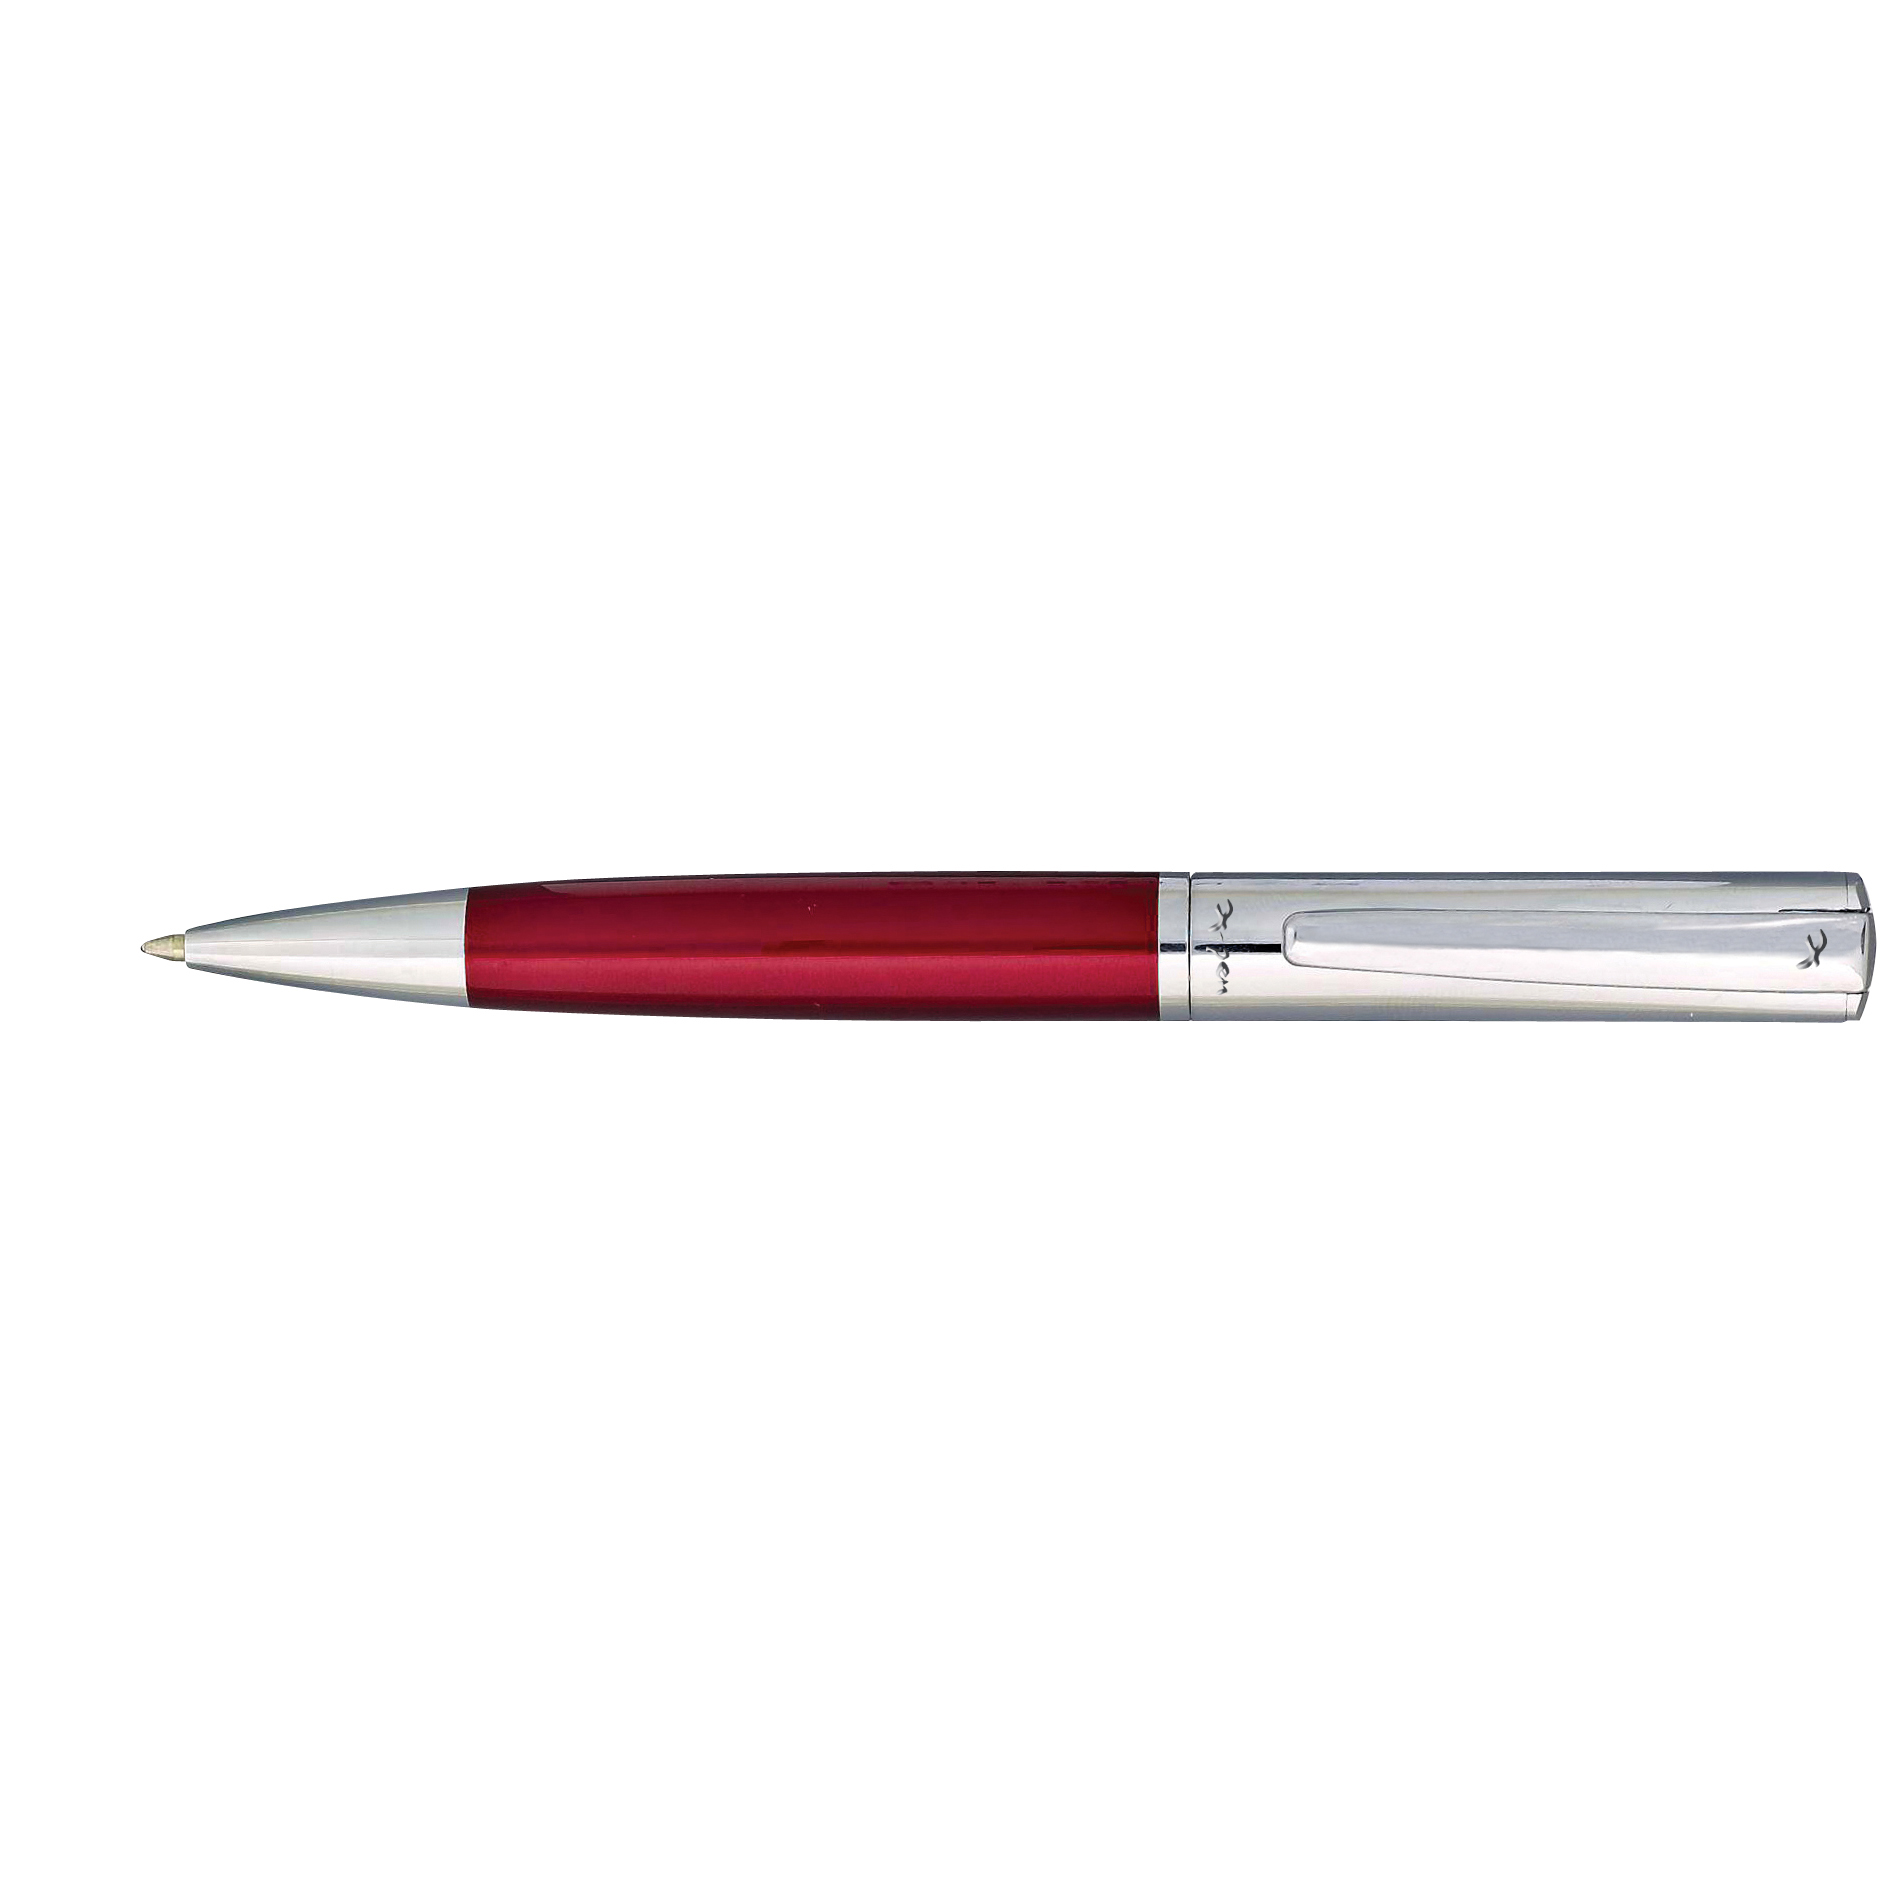 עט X-Pen  פרדייס Paradise כדורי.
גוף מעוצב דמוי עור מסדרת עטי יוקרה X-PEN
בעל שטח גדול למיתוג, מומלץ חריטה או הדפסה.   